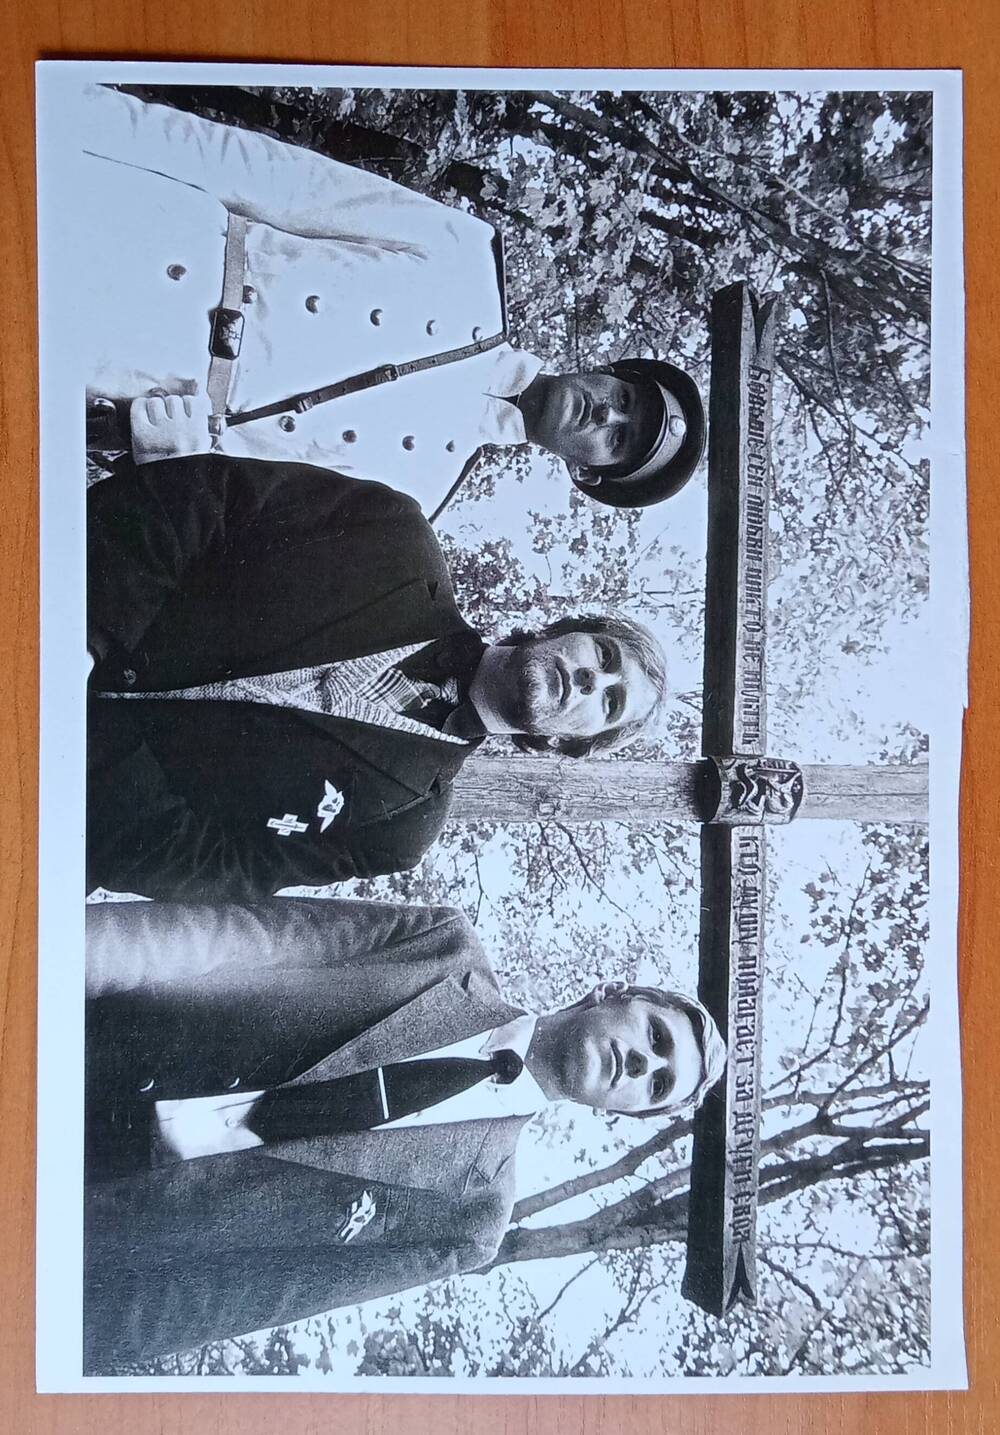 Фотография «Участники воздвижения Креста в селе Заборово 29 июня 1990 г», Ф. Титов